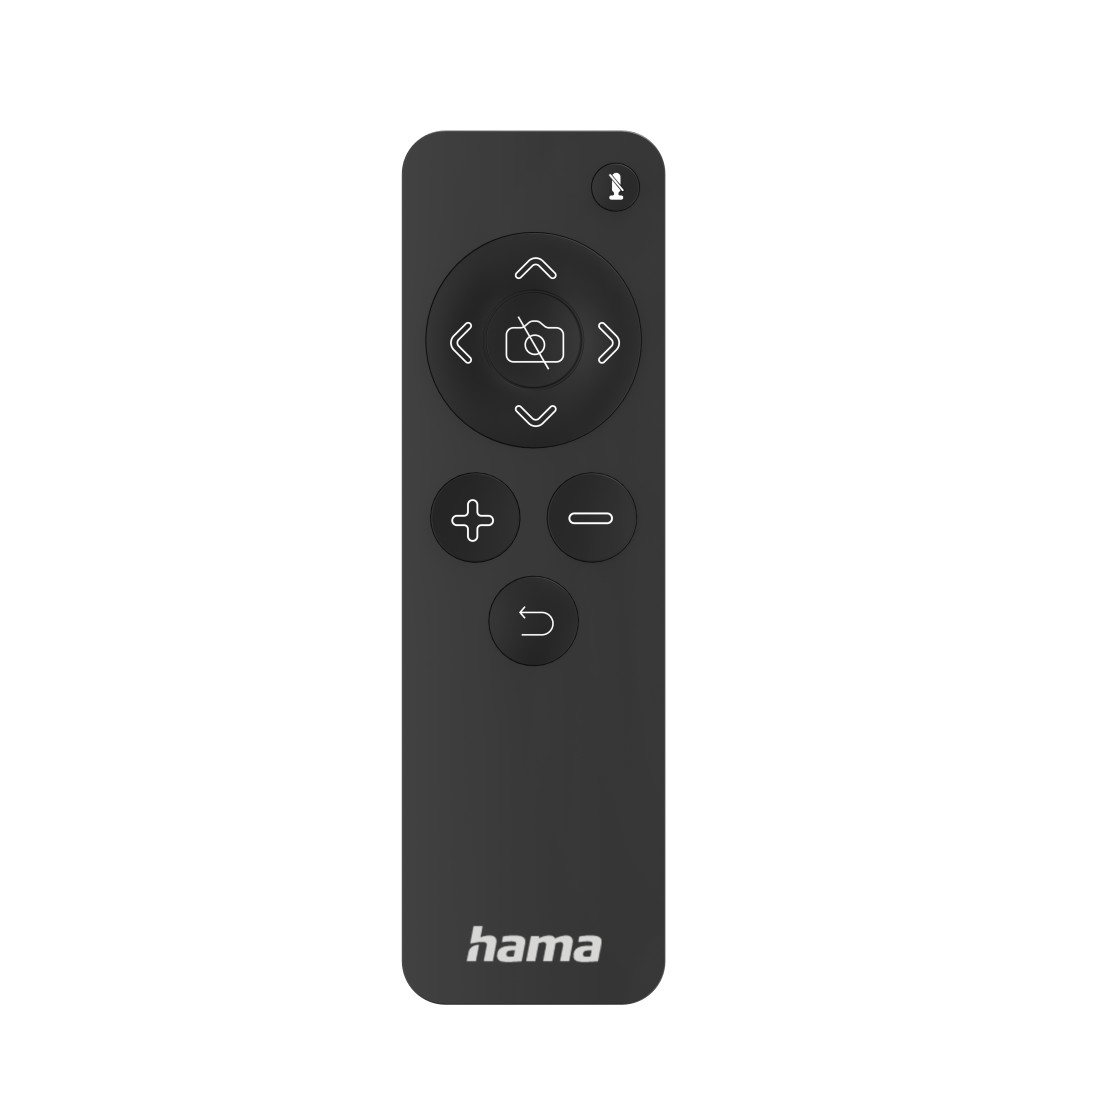 Hama C-800 Pro webbkameror 4 MP 2560 x 1440 pixlar USB 2.0 Svart